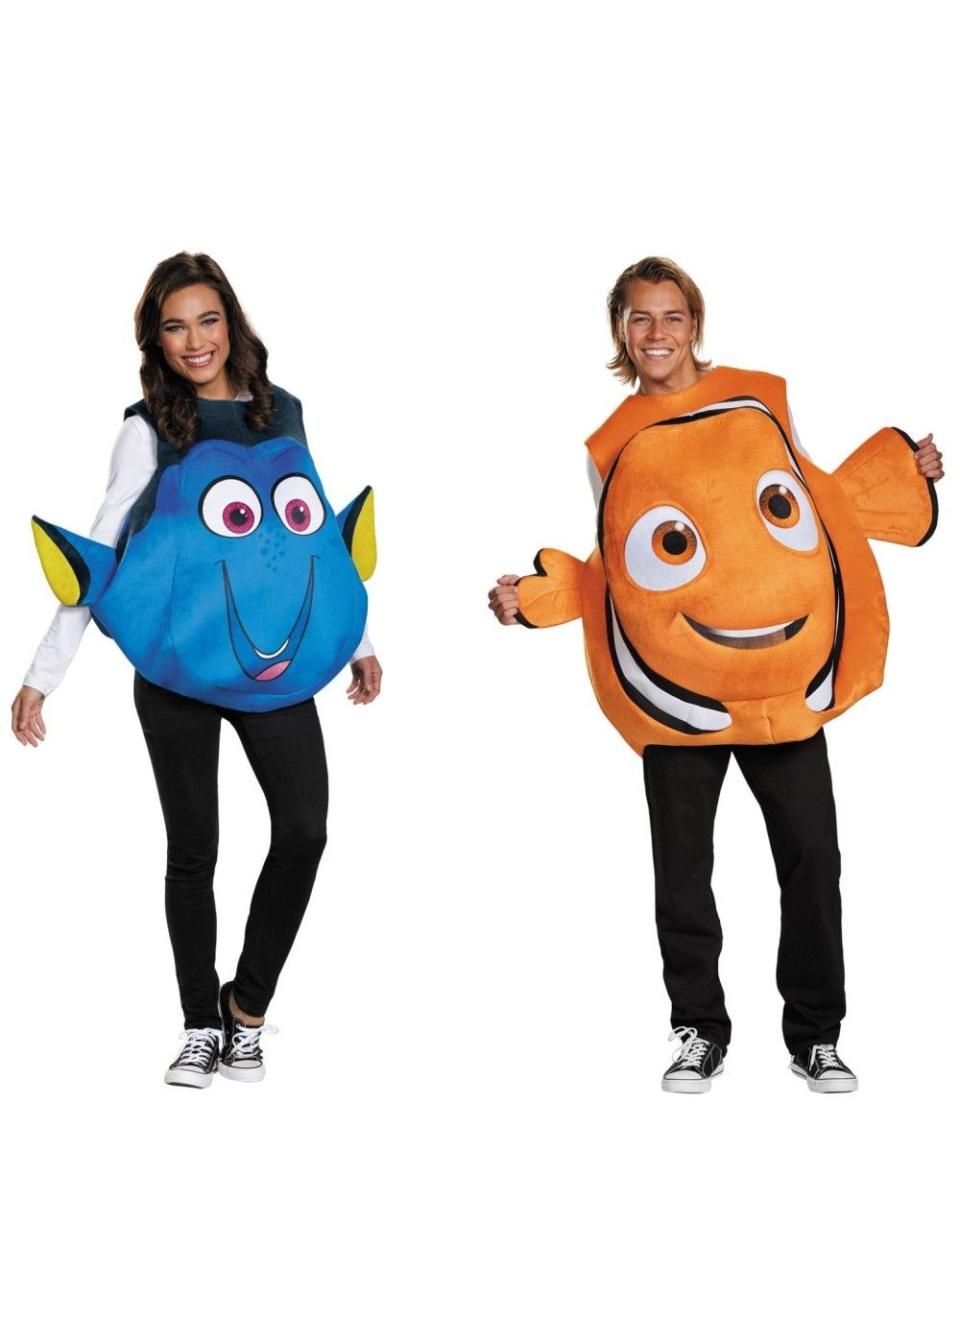 Nemo And Dory